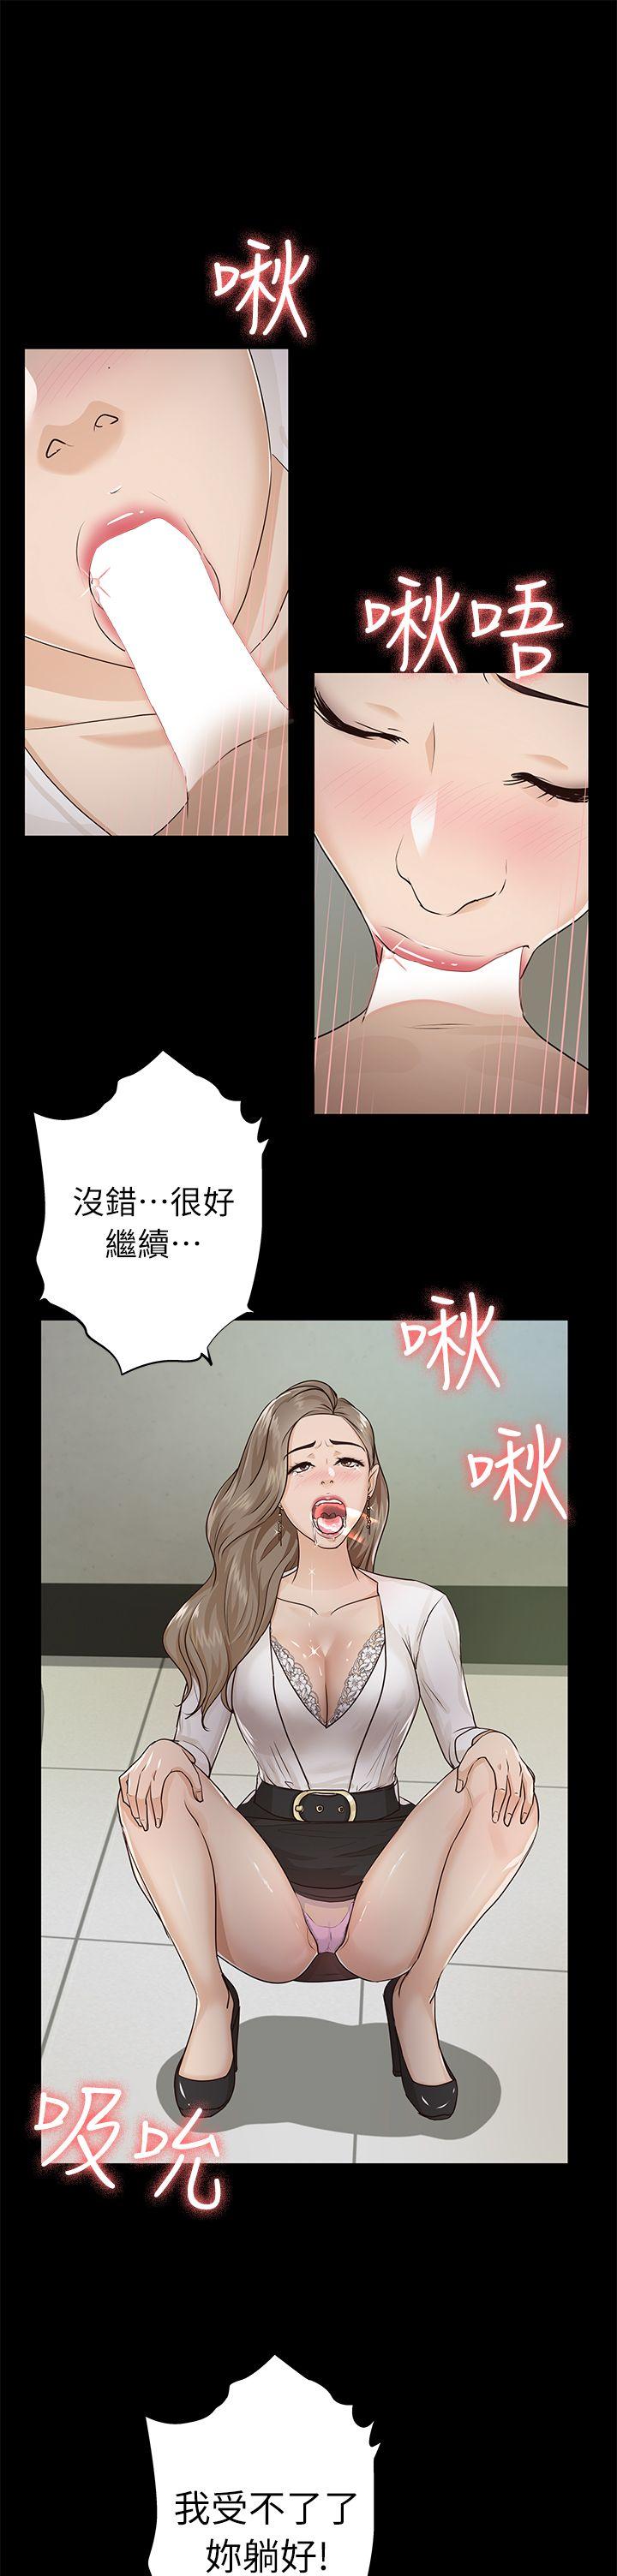 韩国污漫画 養女 第16话 17